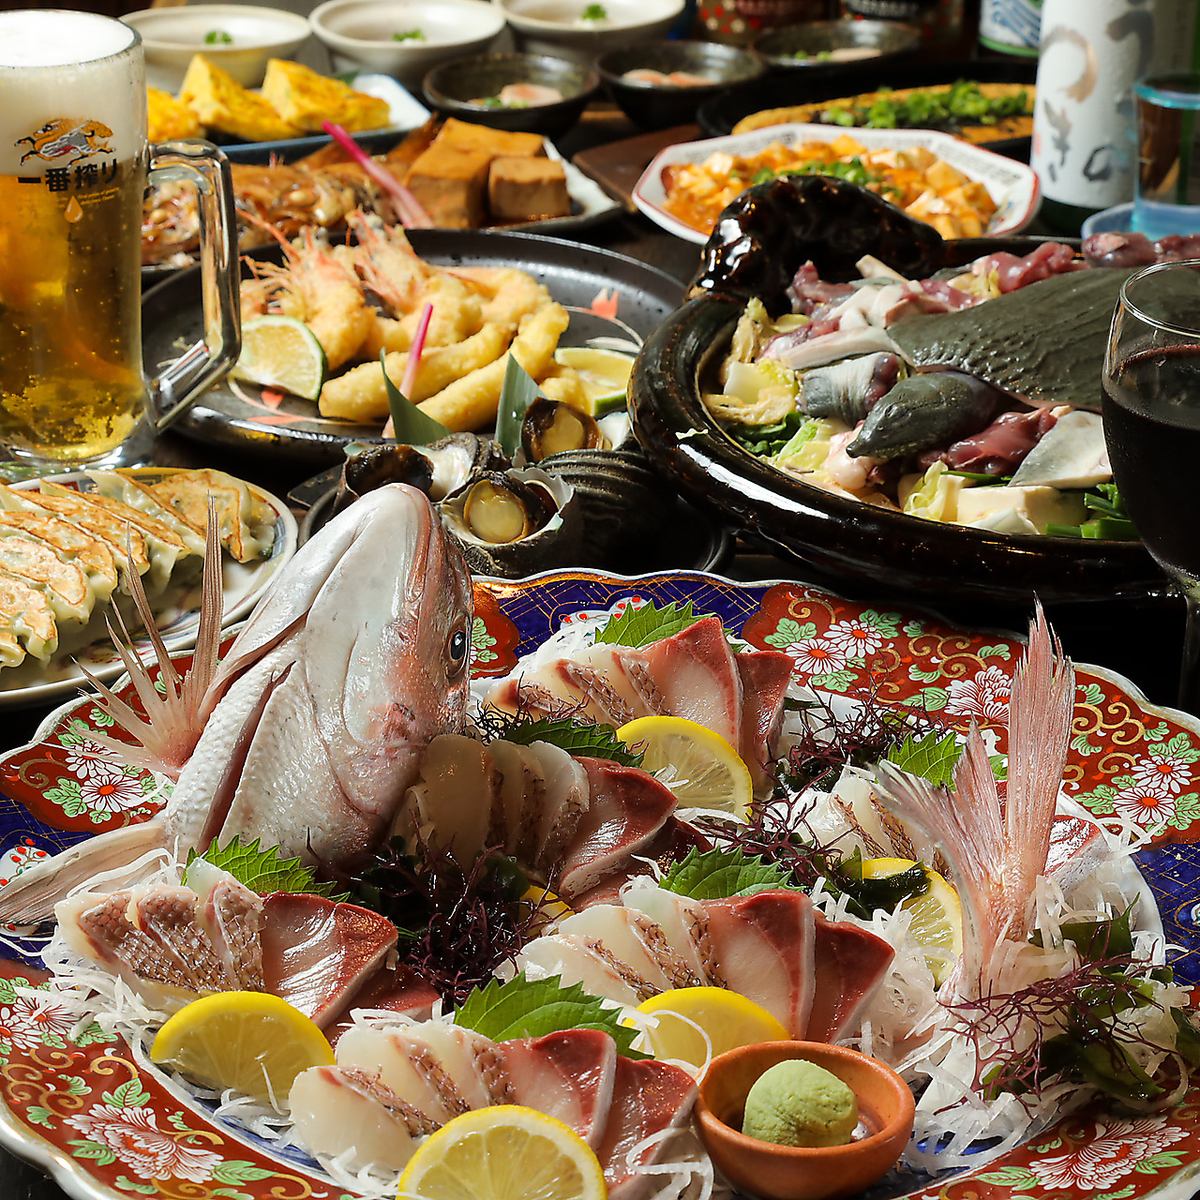 以日本料理为主的合理居酒屋。有300多种菜单。